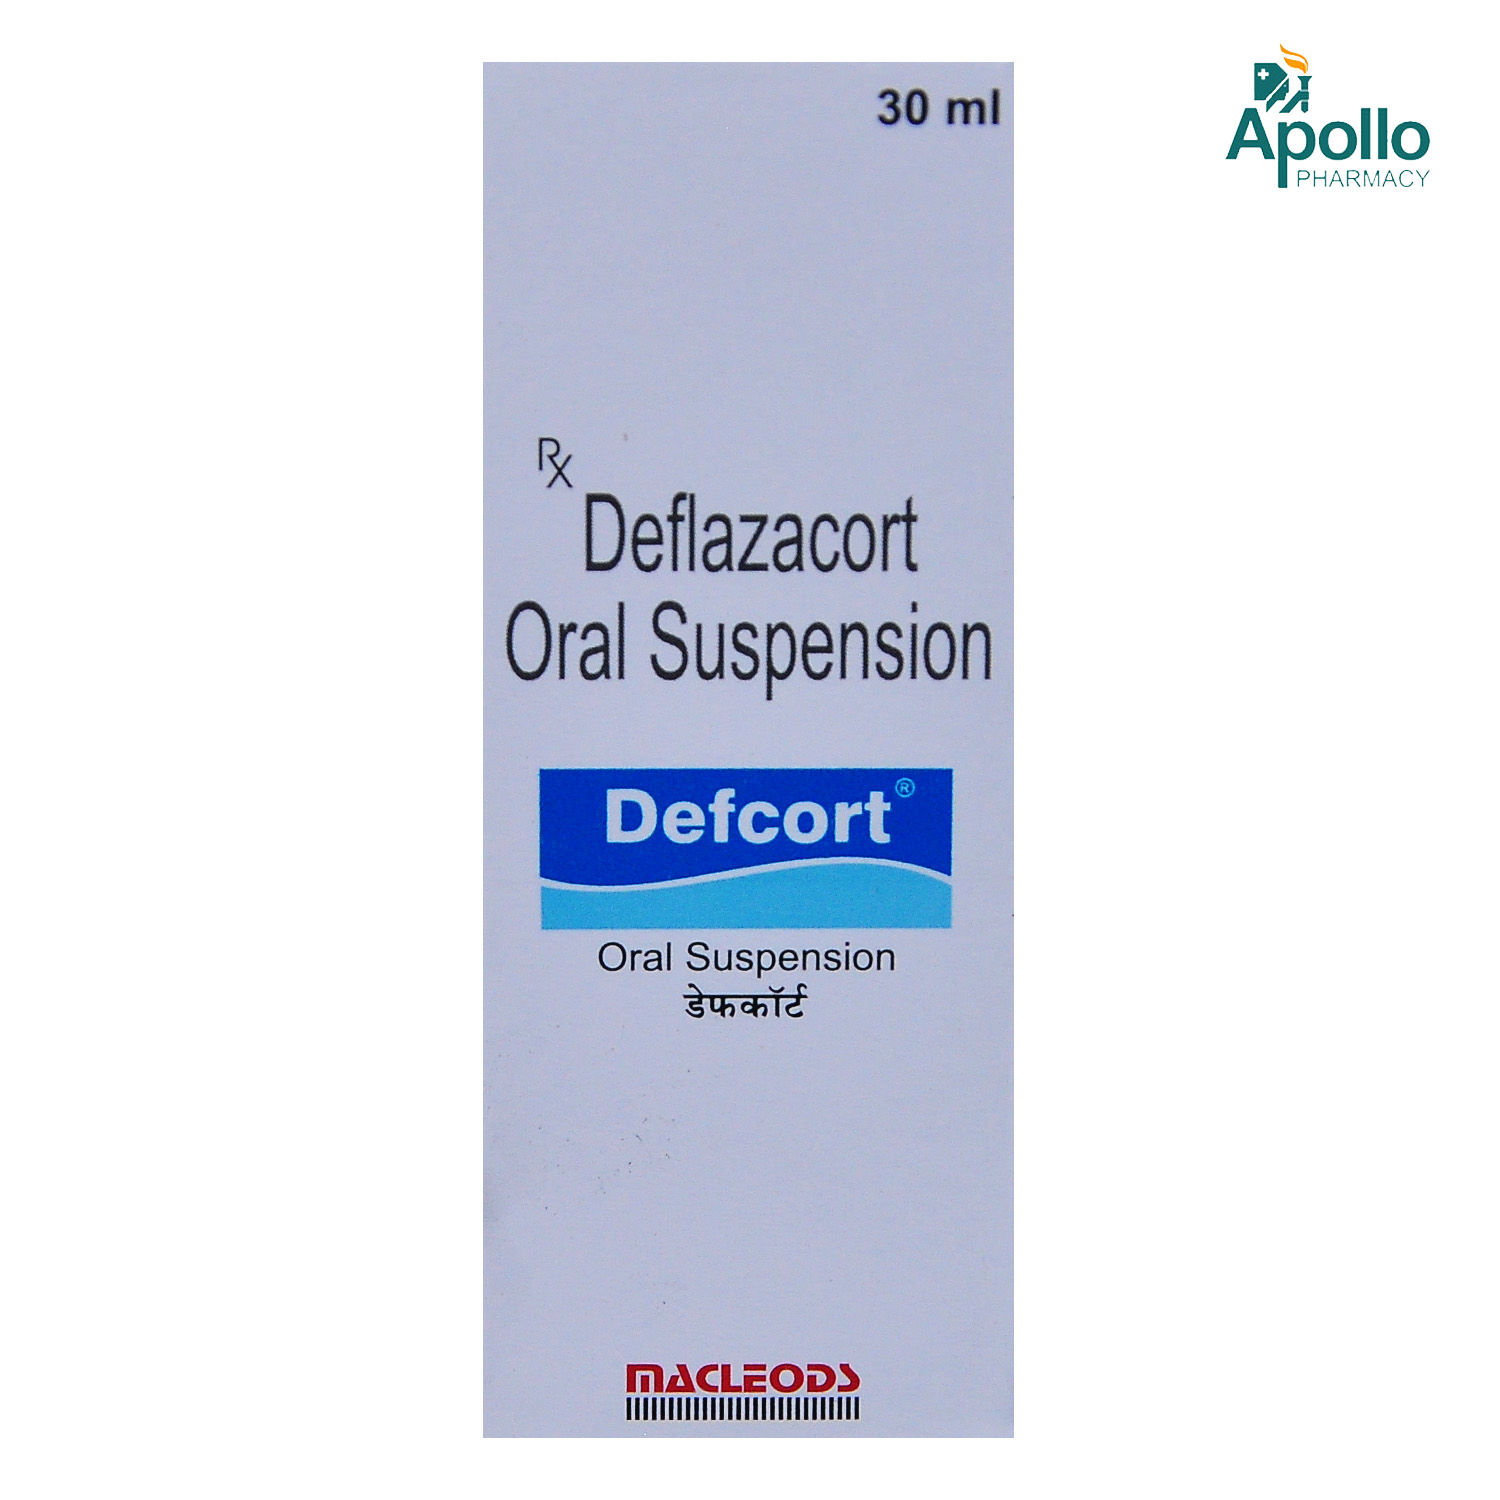 Buy Defcort Oral Suspension 30 ml Online